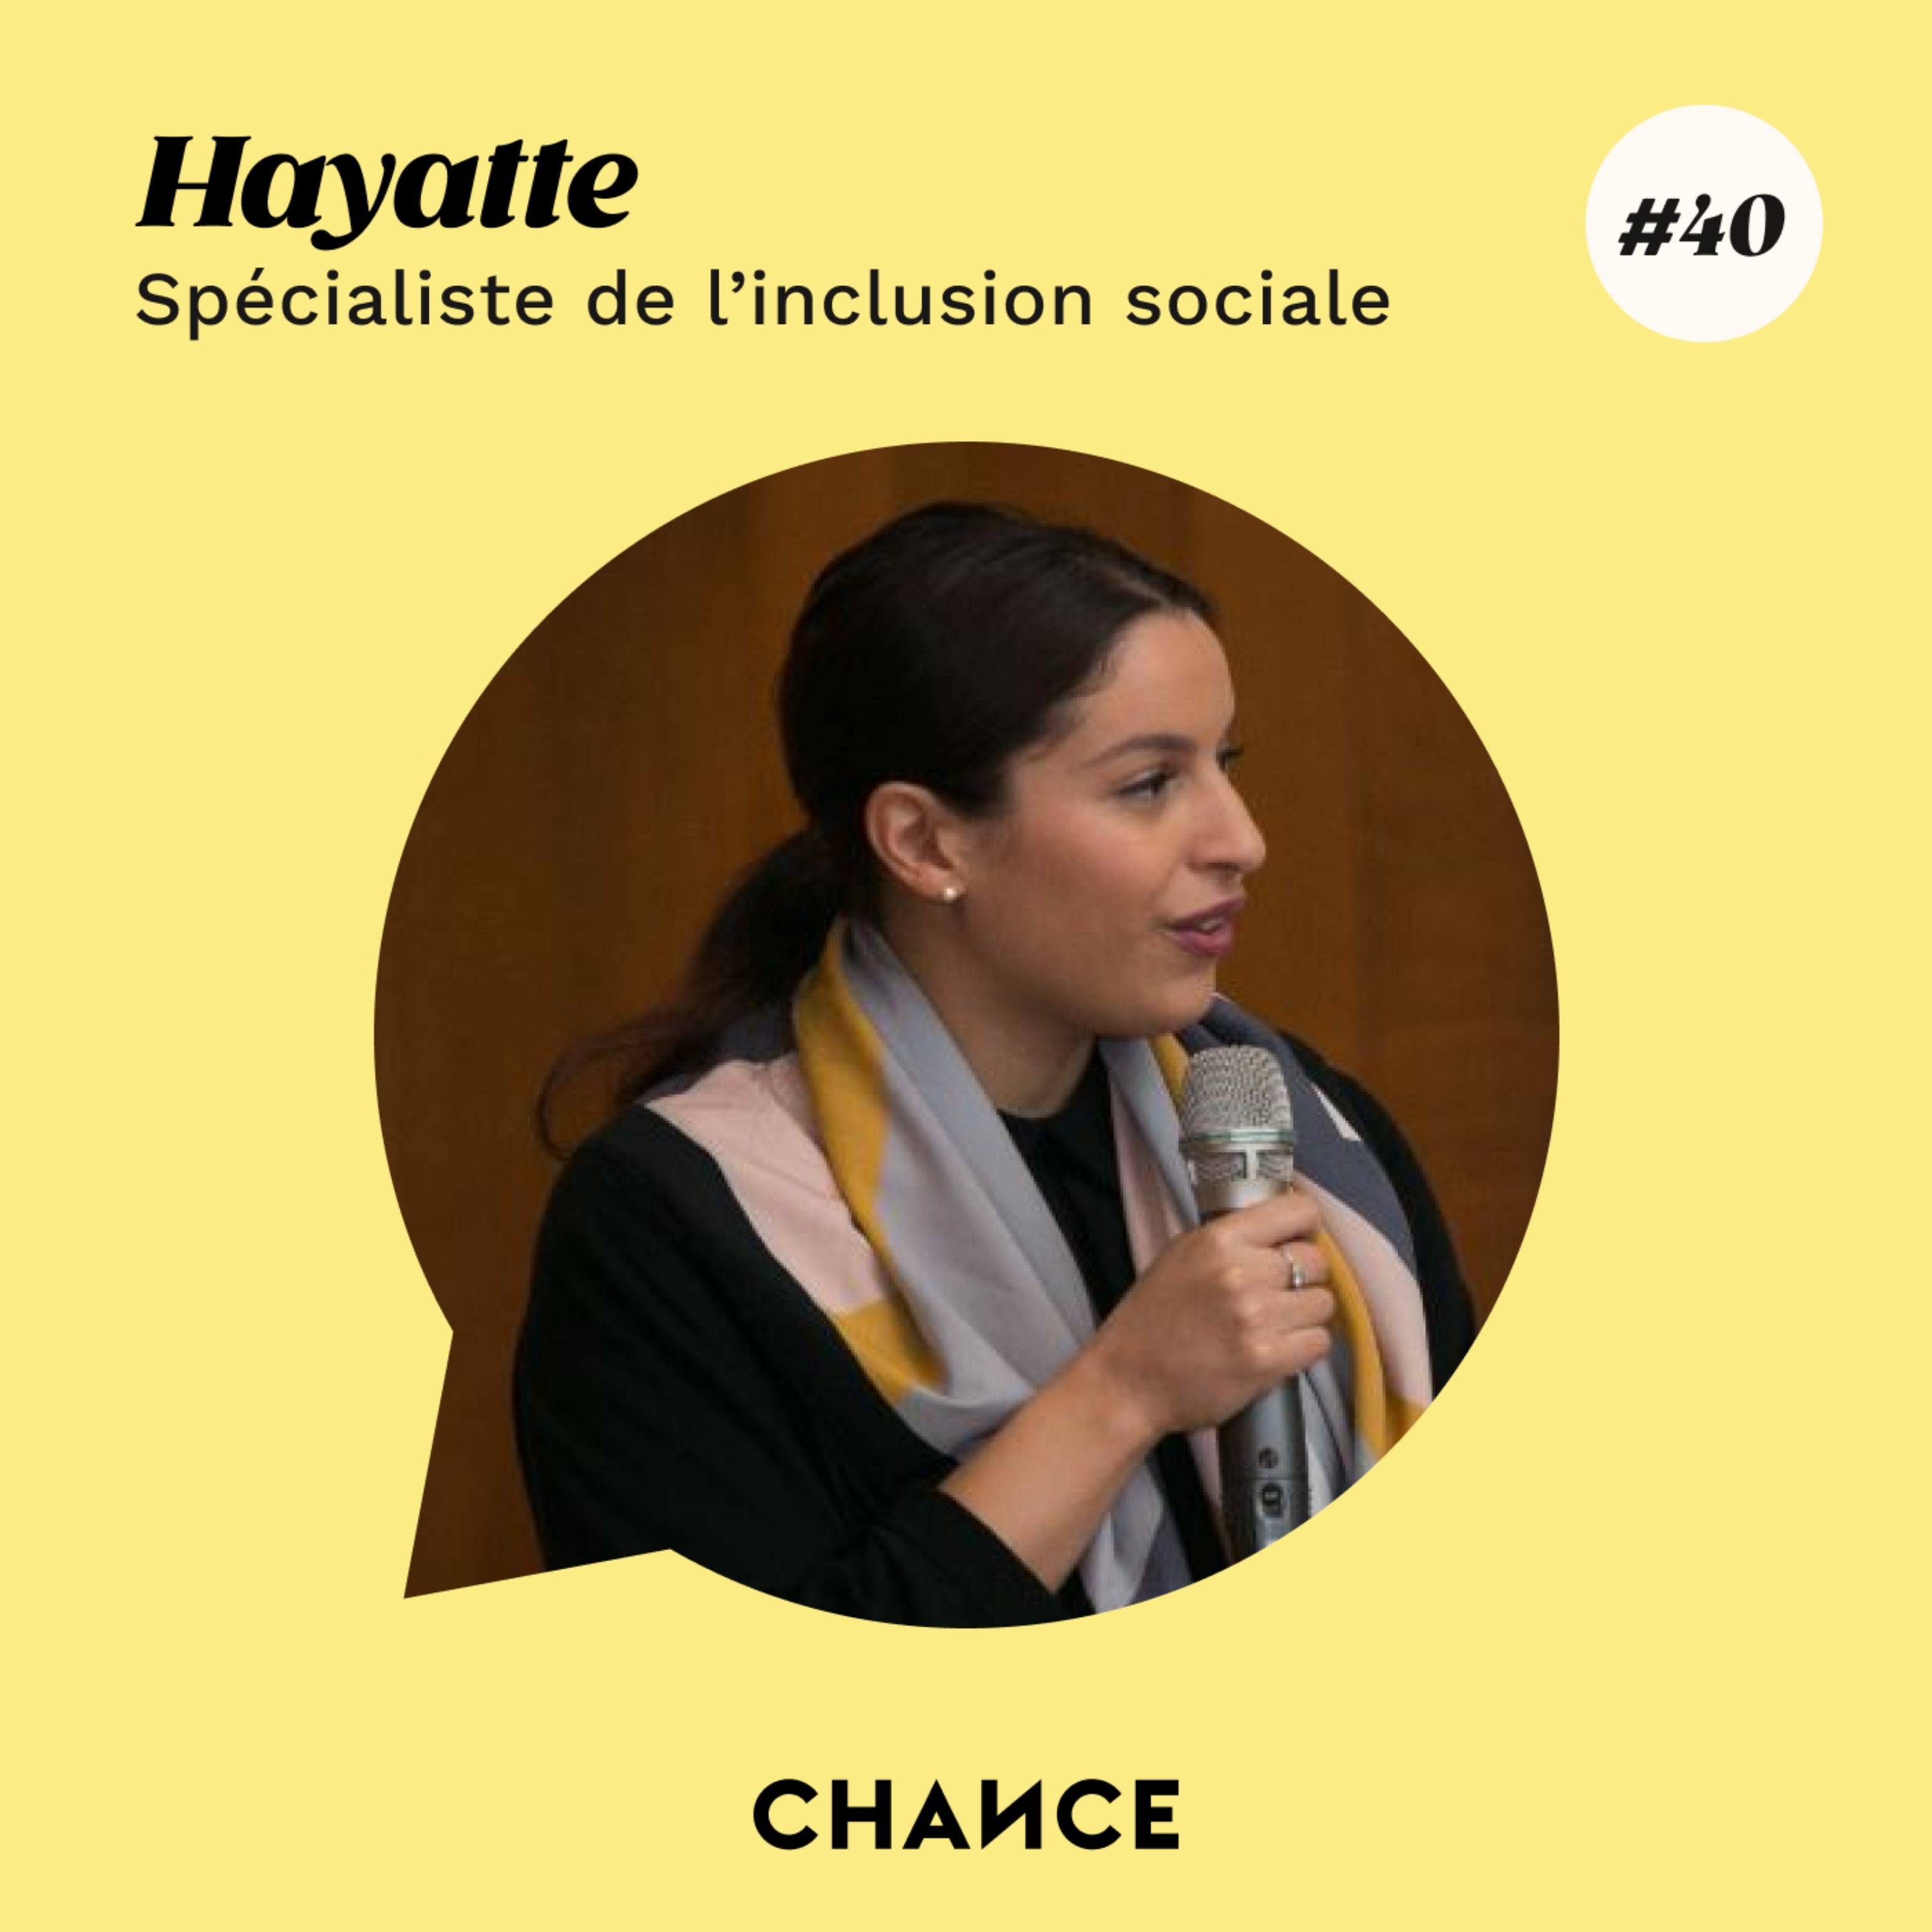 #40 - Hayatte, spécialiste en inclusion sociale : ”Donner la possibilité à chacun de se réaliser”.